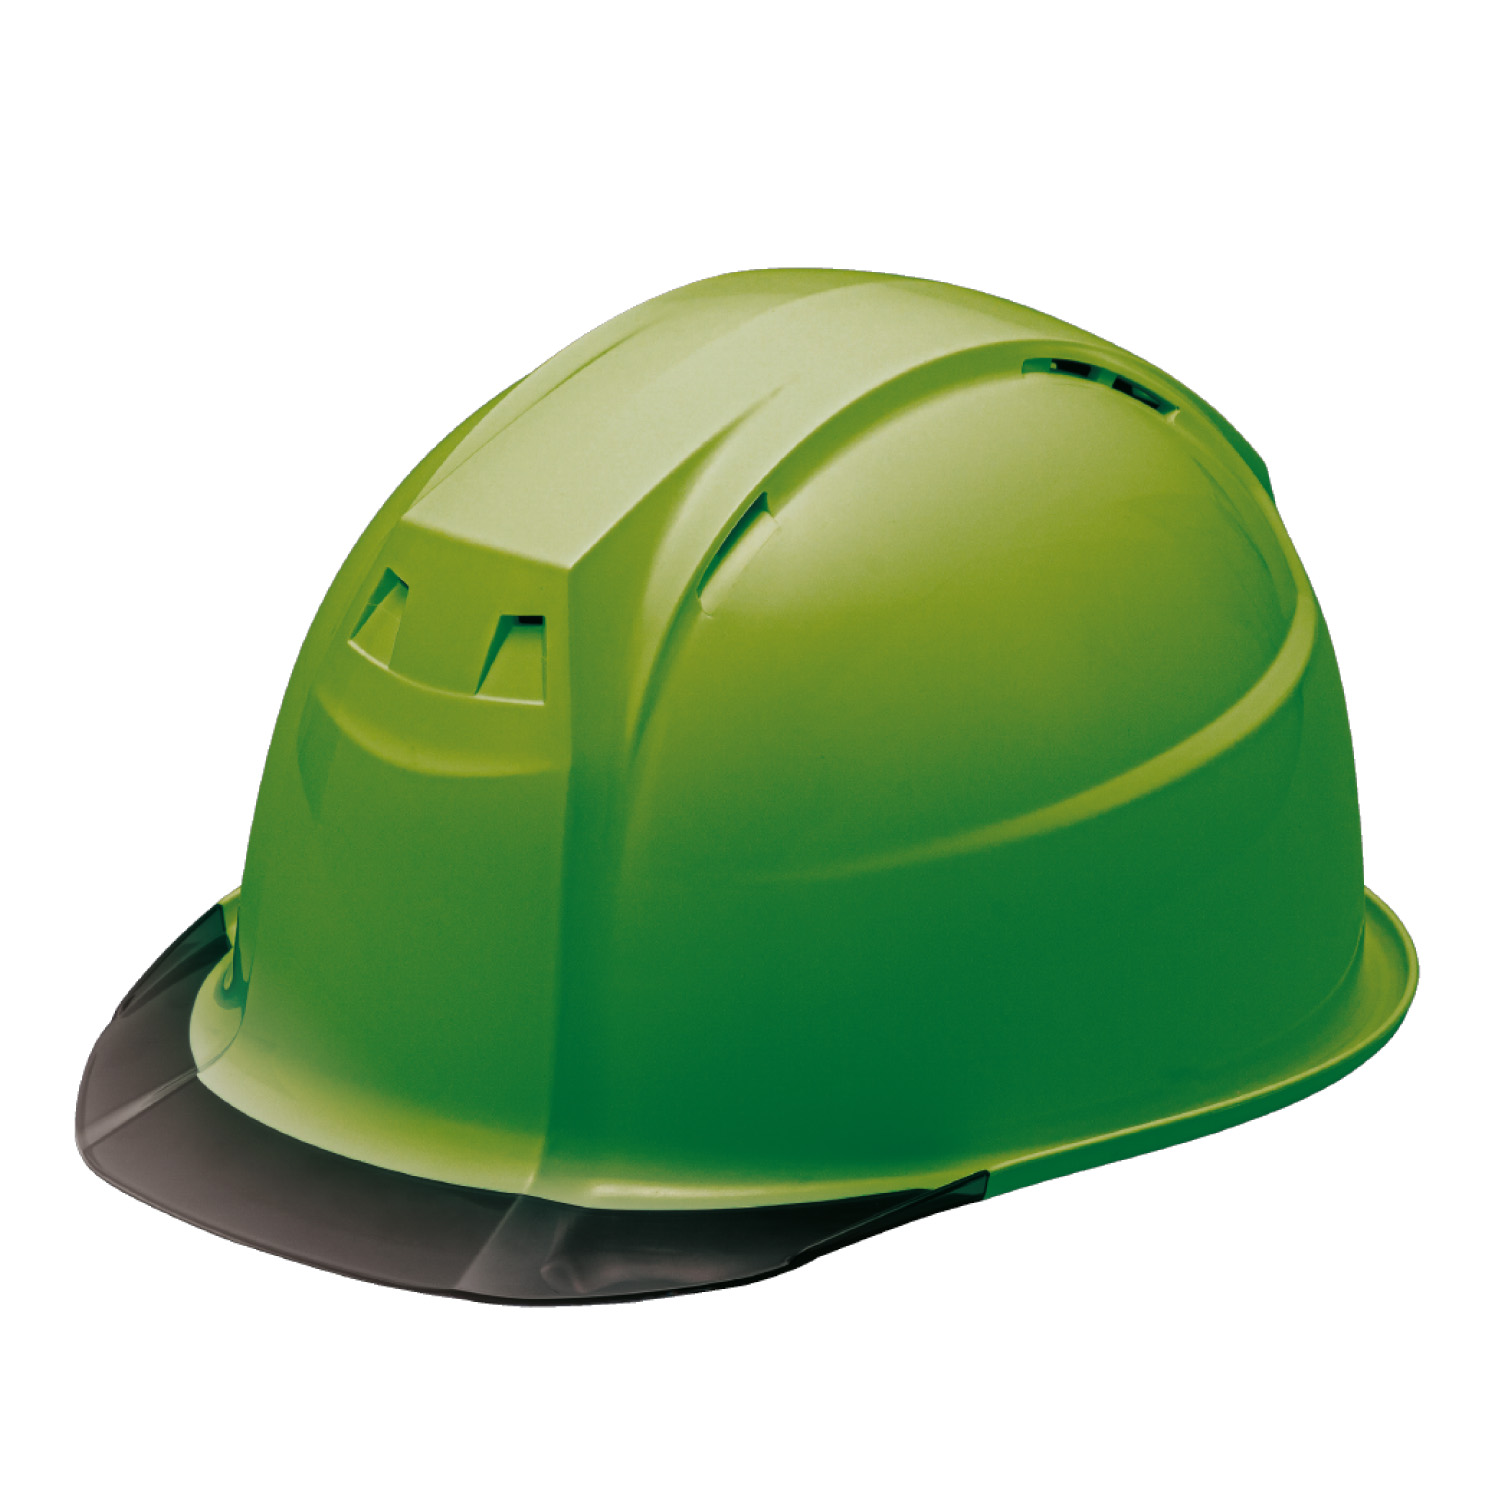 ヘルメット 保護帽 Fo IV-1 飛来・落下物用 通期孔あり スモークバイザー 透明ひさし 全7色 加賀ヘルメット KAGA